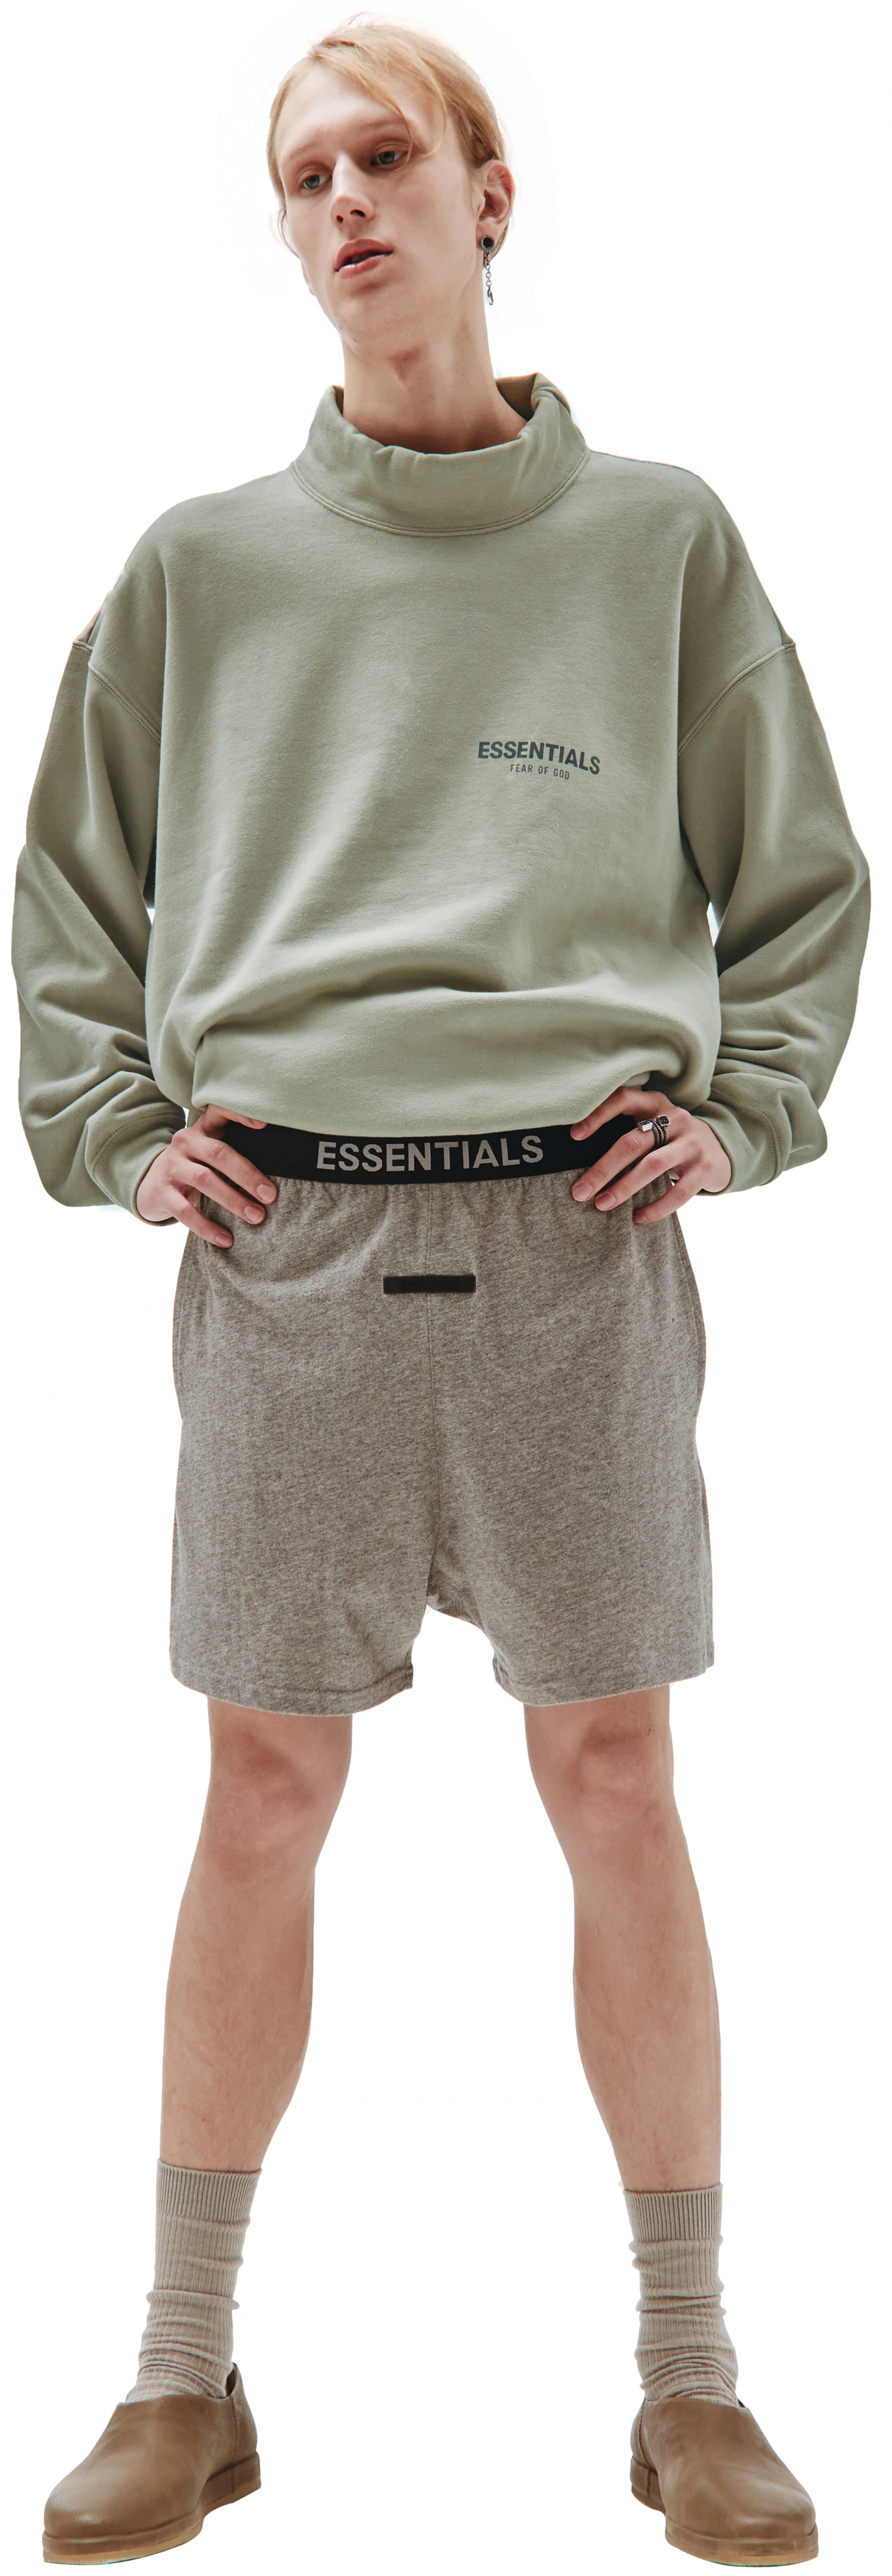 Fear of God Essentials Grey logo shorts with elastic